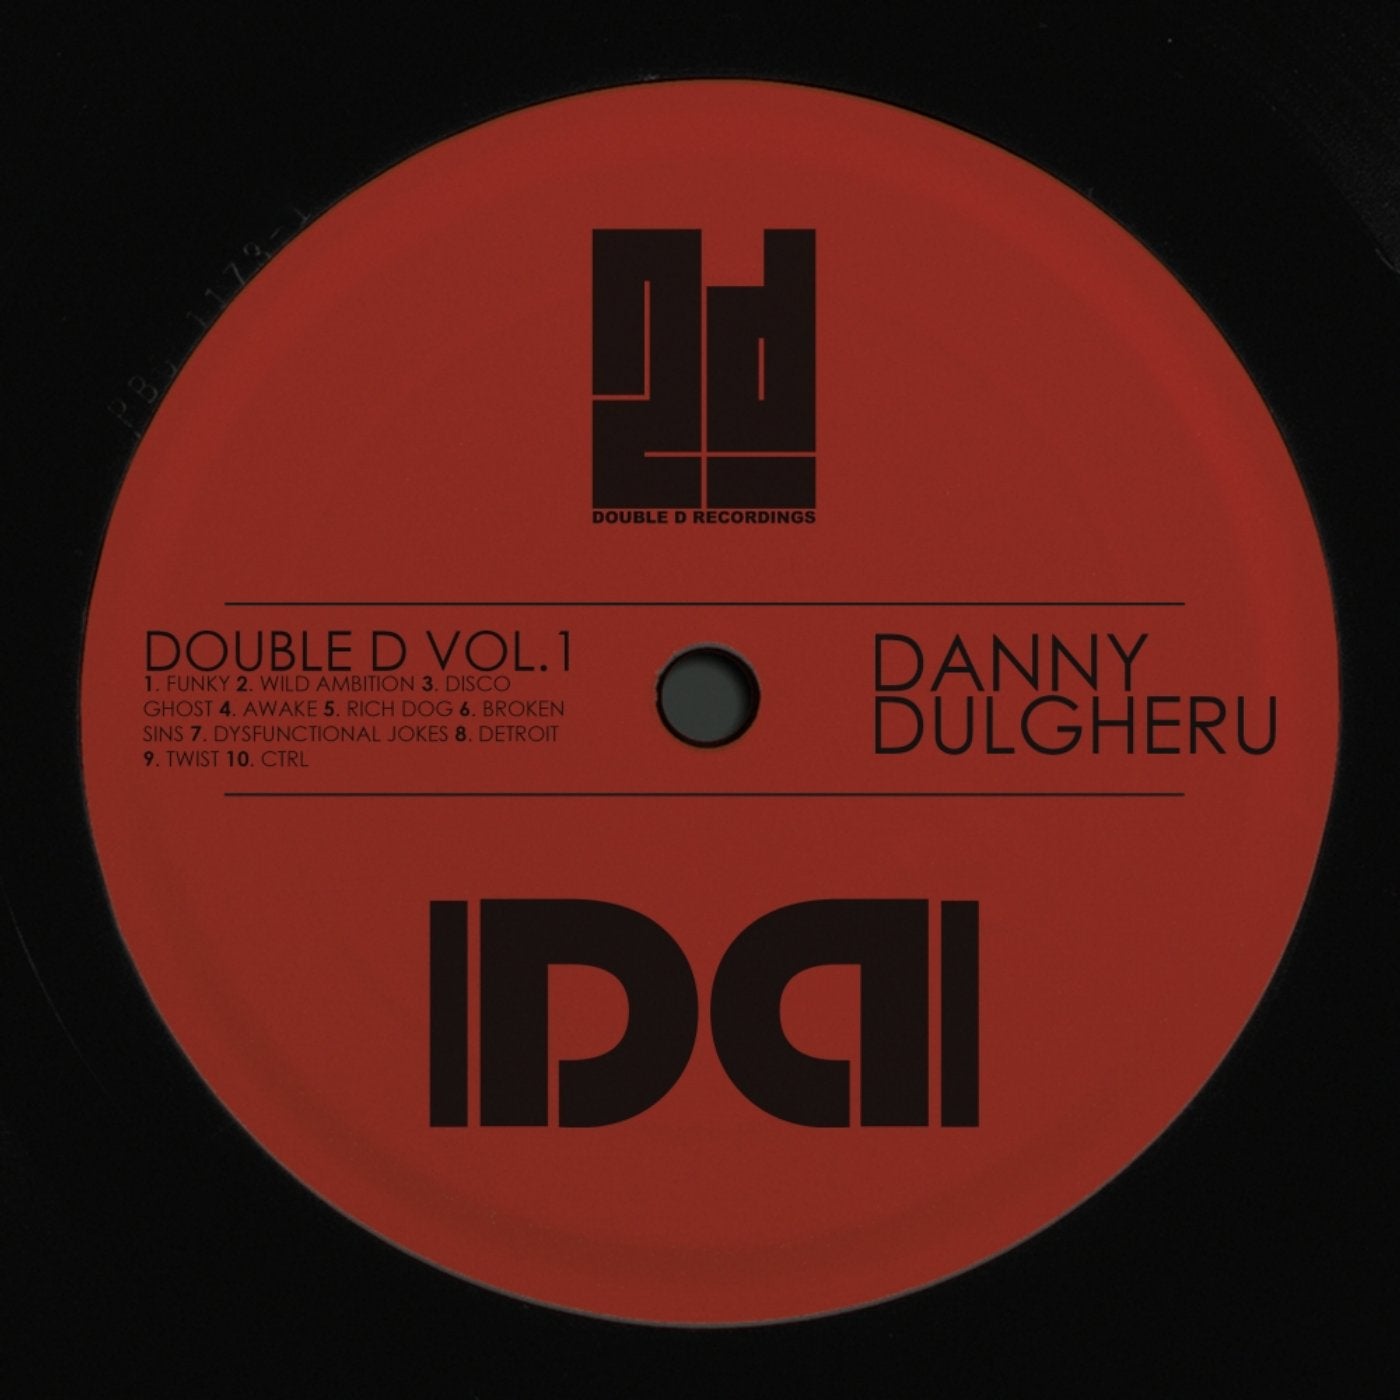 Double D, Vol.1